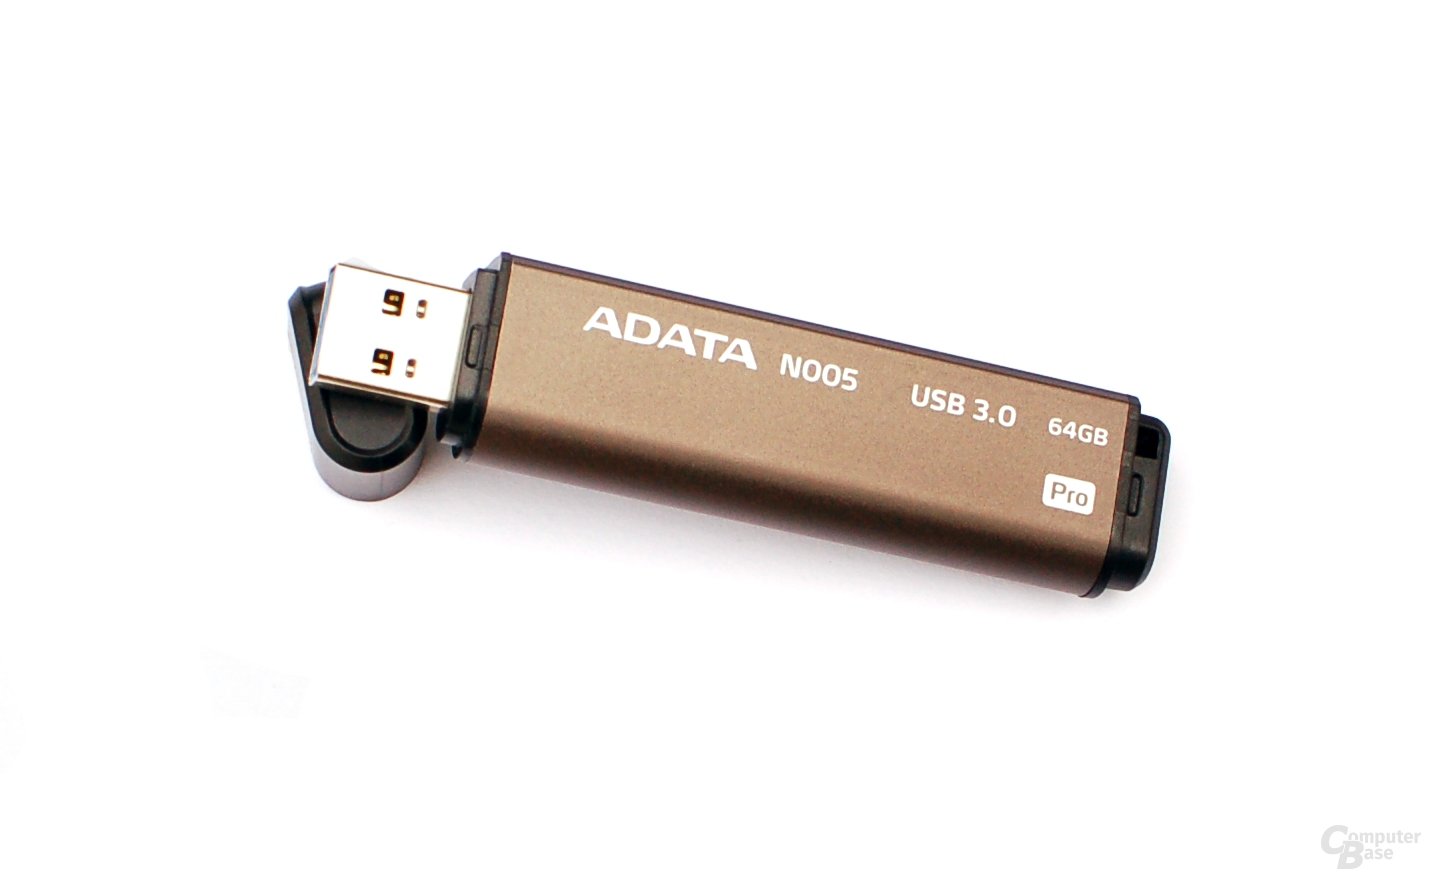 Adata Nobility N005 Pro 64 GB